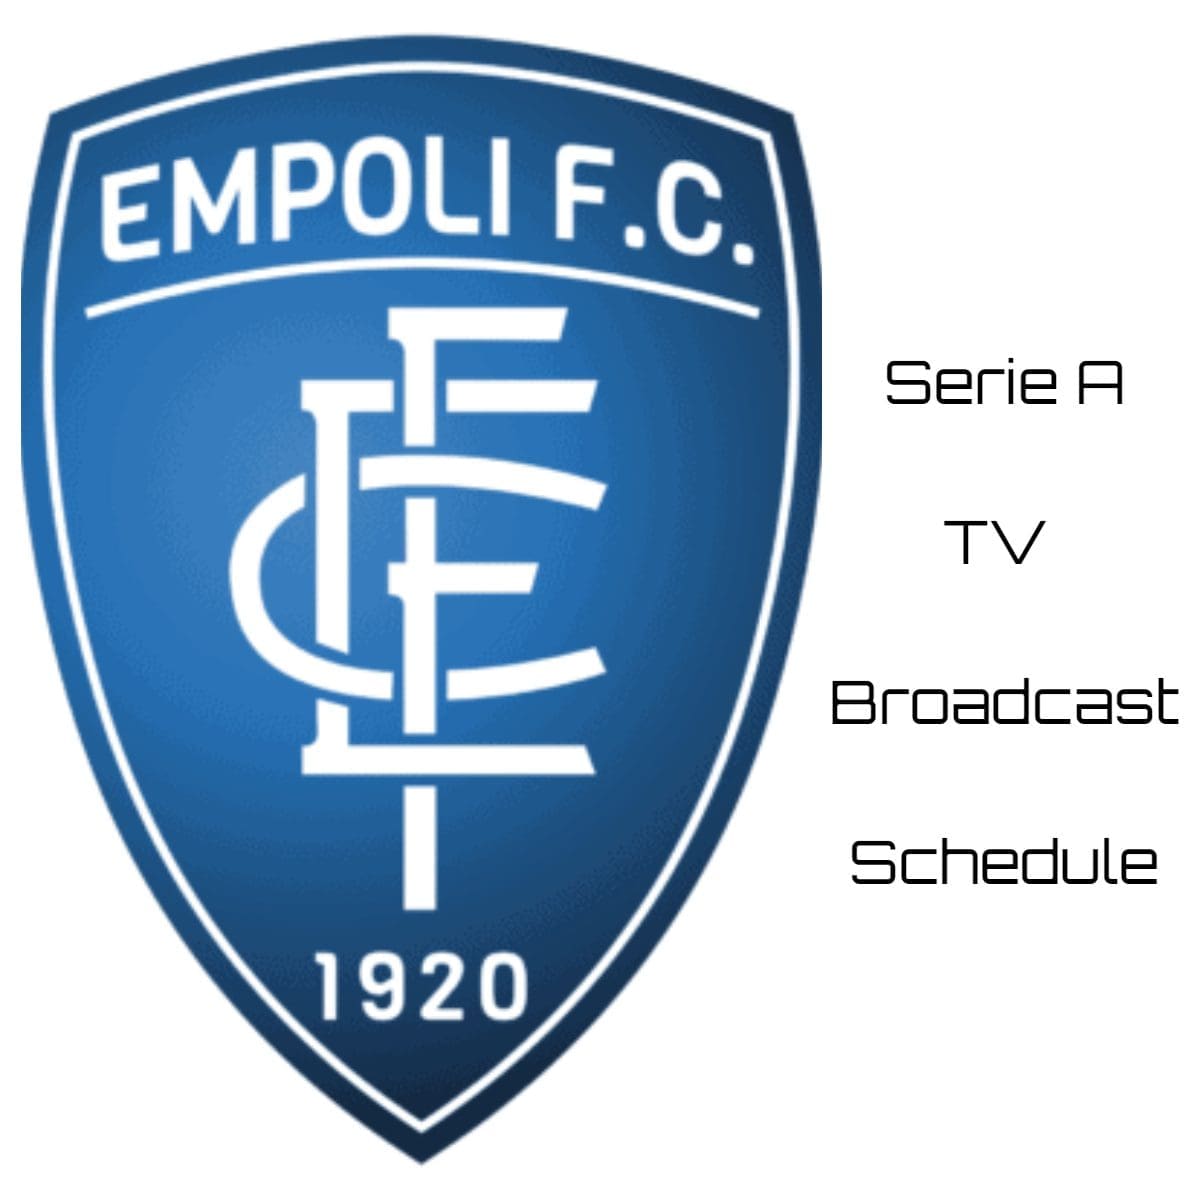 Empoli TV Broadcast Schedule